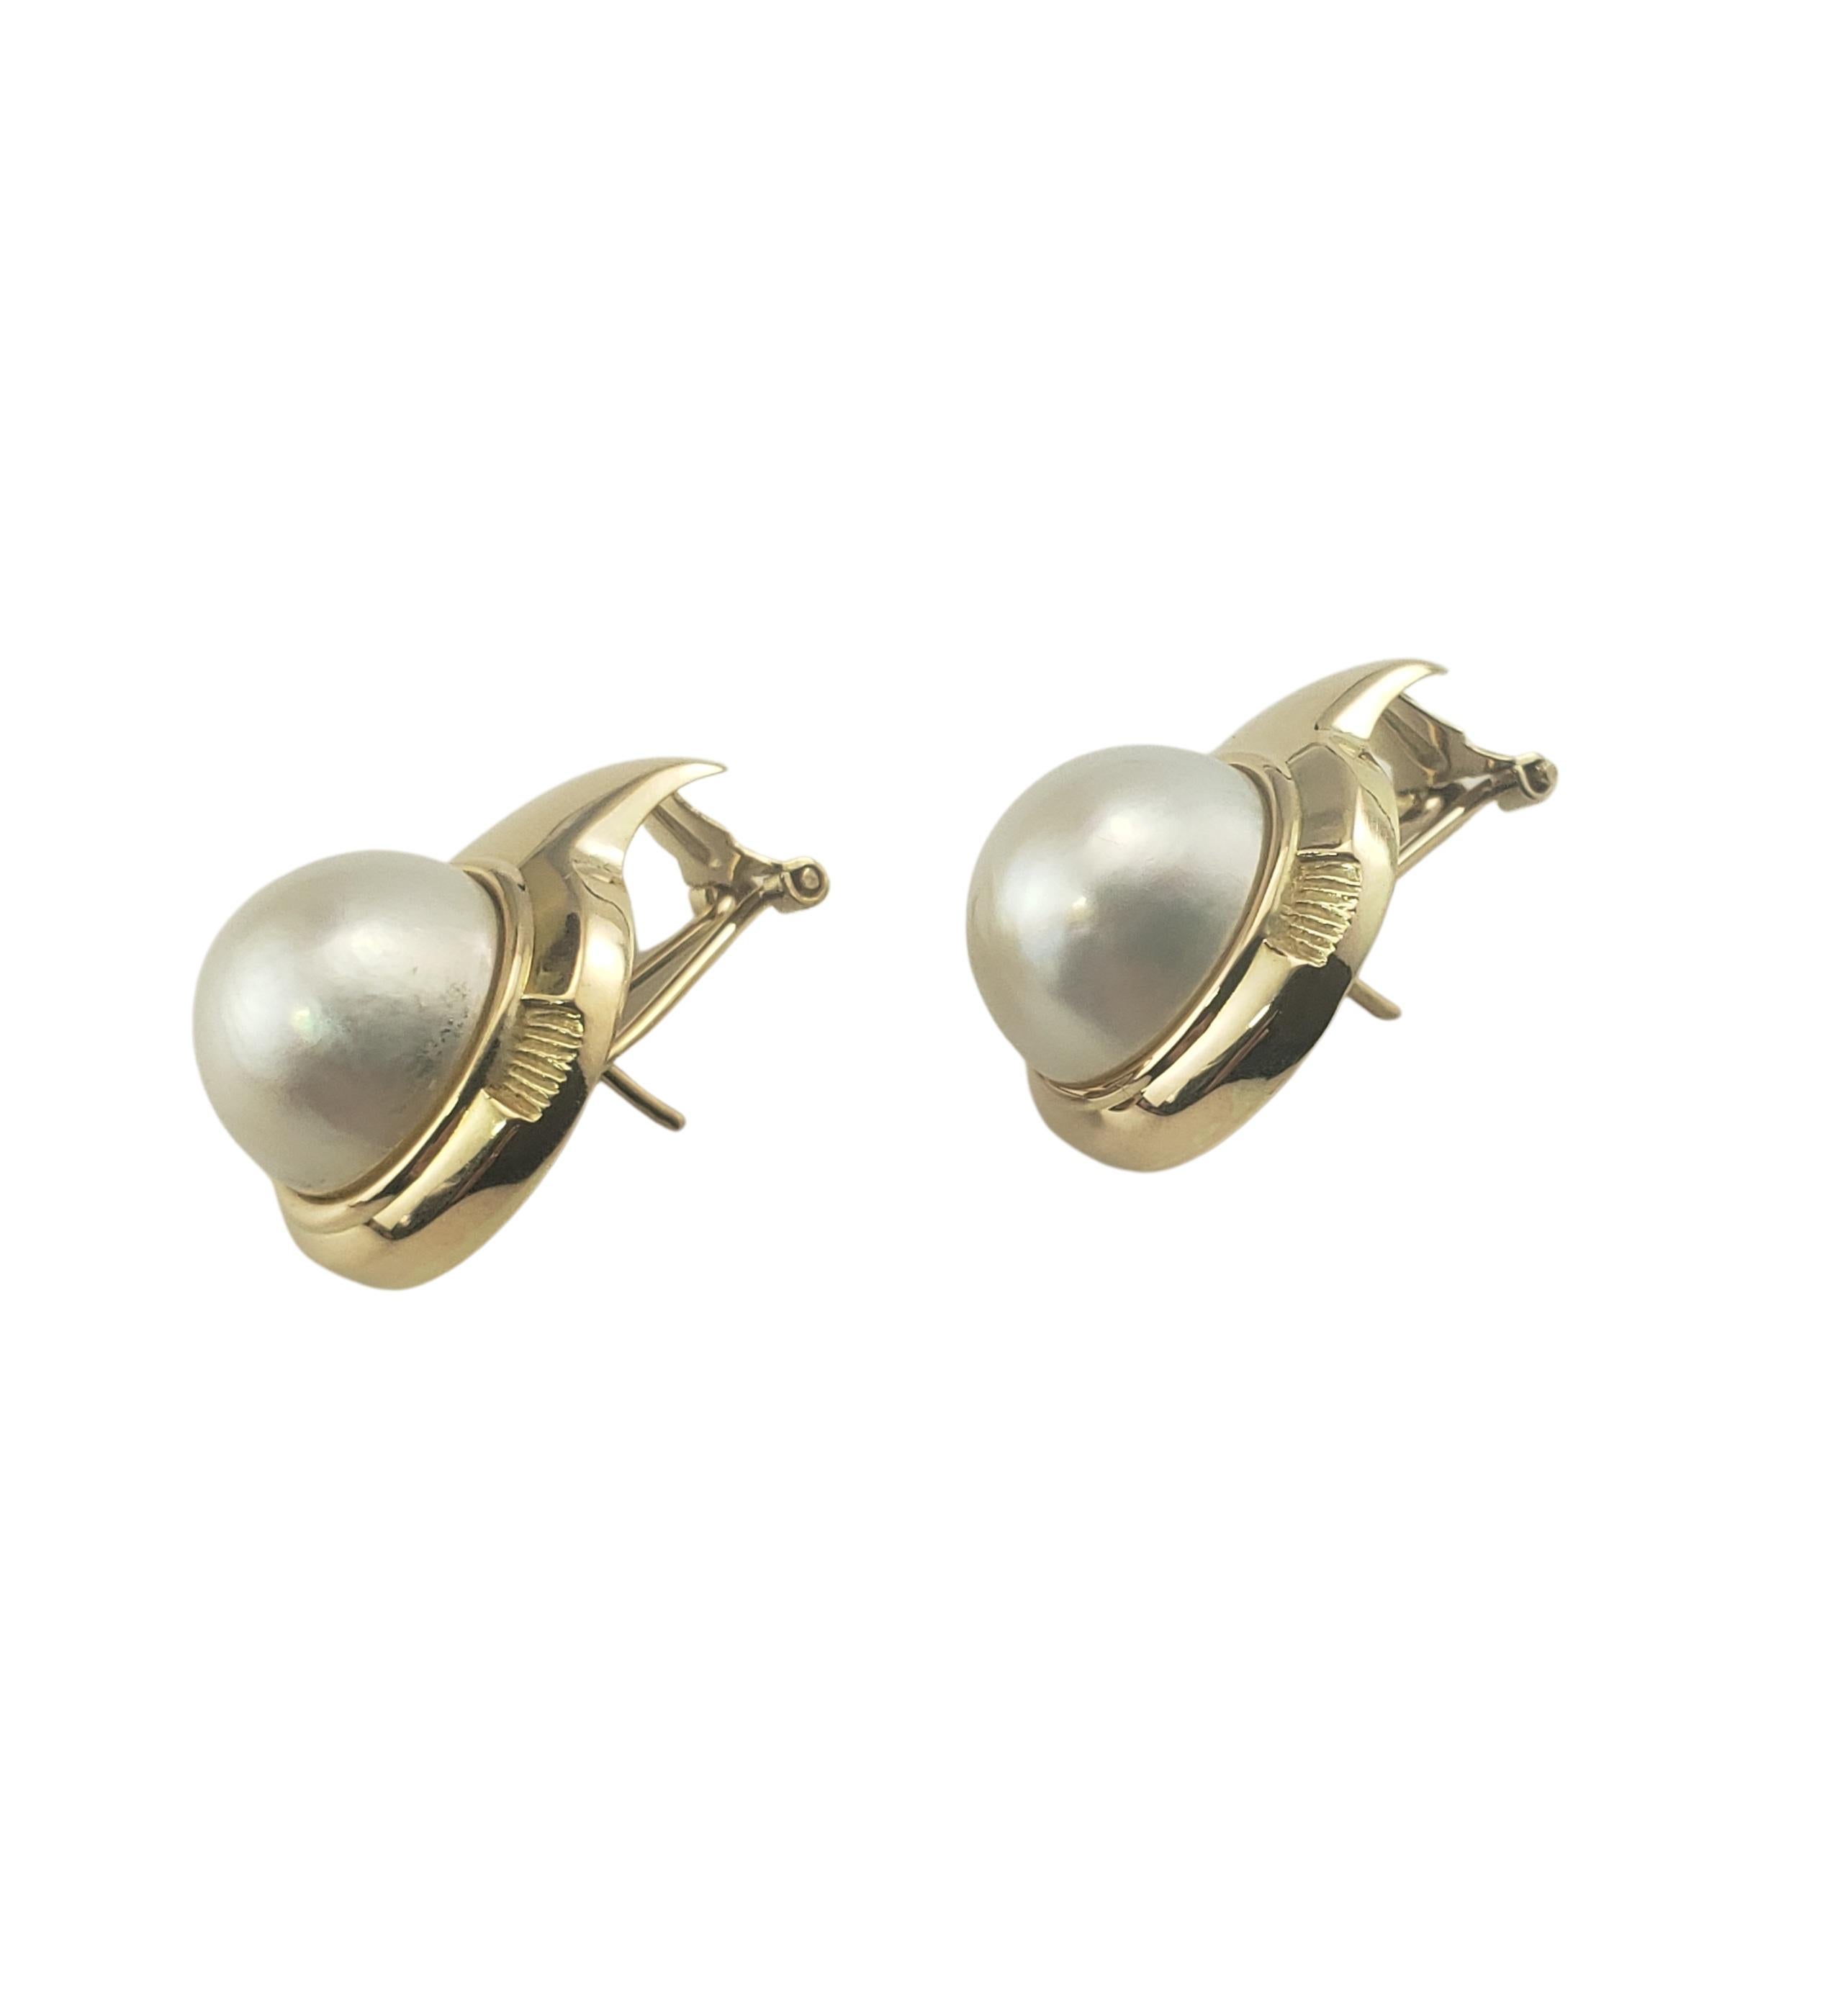 boucles d'oreilles en or jaune 14 carats et perles Mabe-

Ces élégantes boucles d'oreilles comportent chacune une perle Mabe (12 mm) sertie dans de l'or jaune classique 14K.  Fermetures à charnière.

Taille : 23 mm x 18 mm

Poids :  4.3 dwt. /  6.7